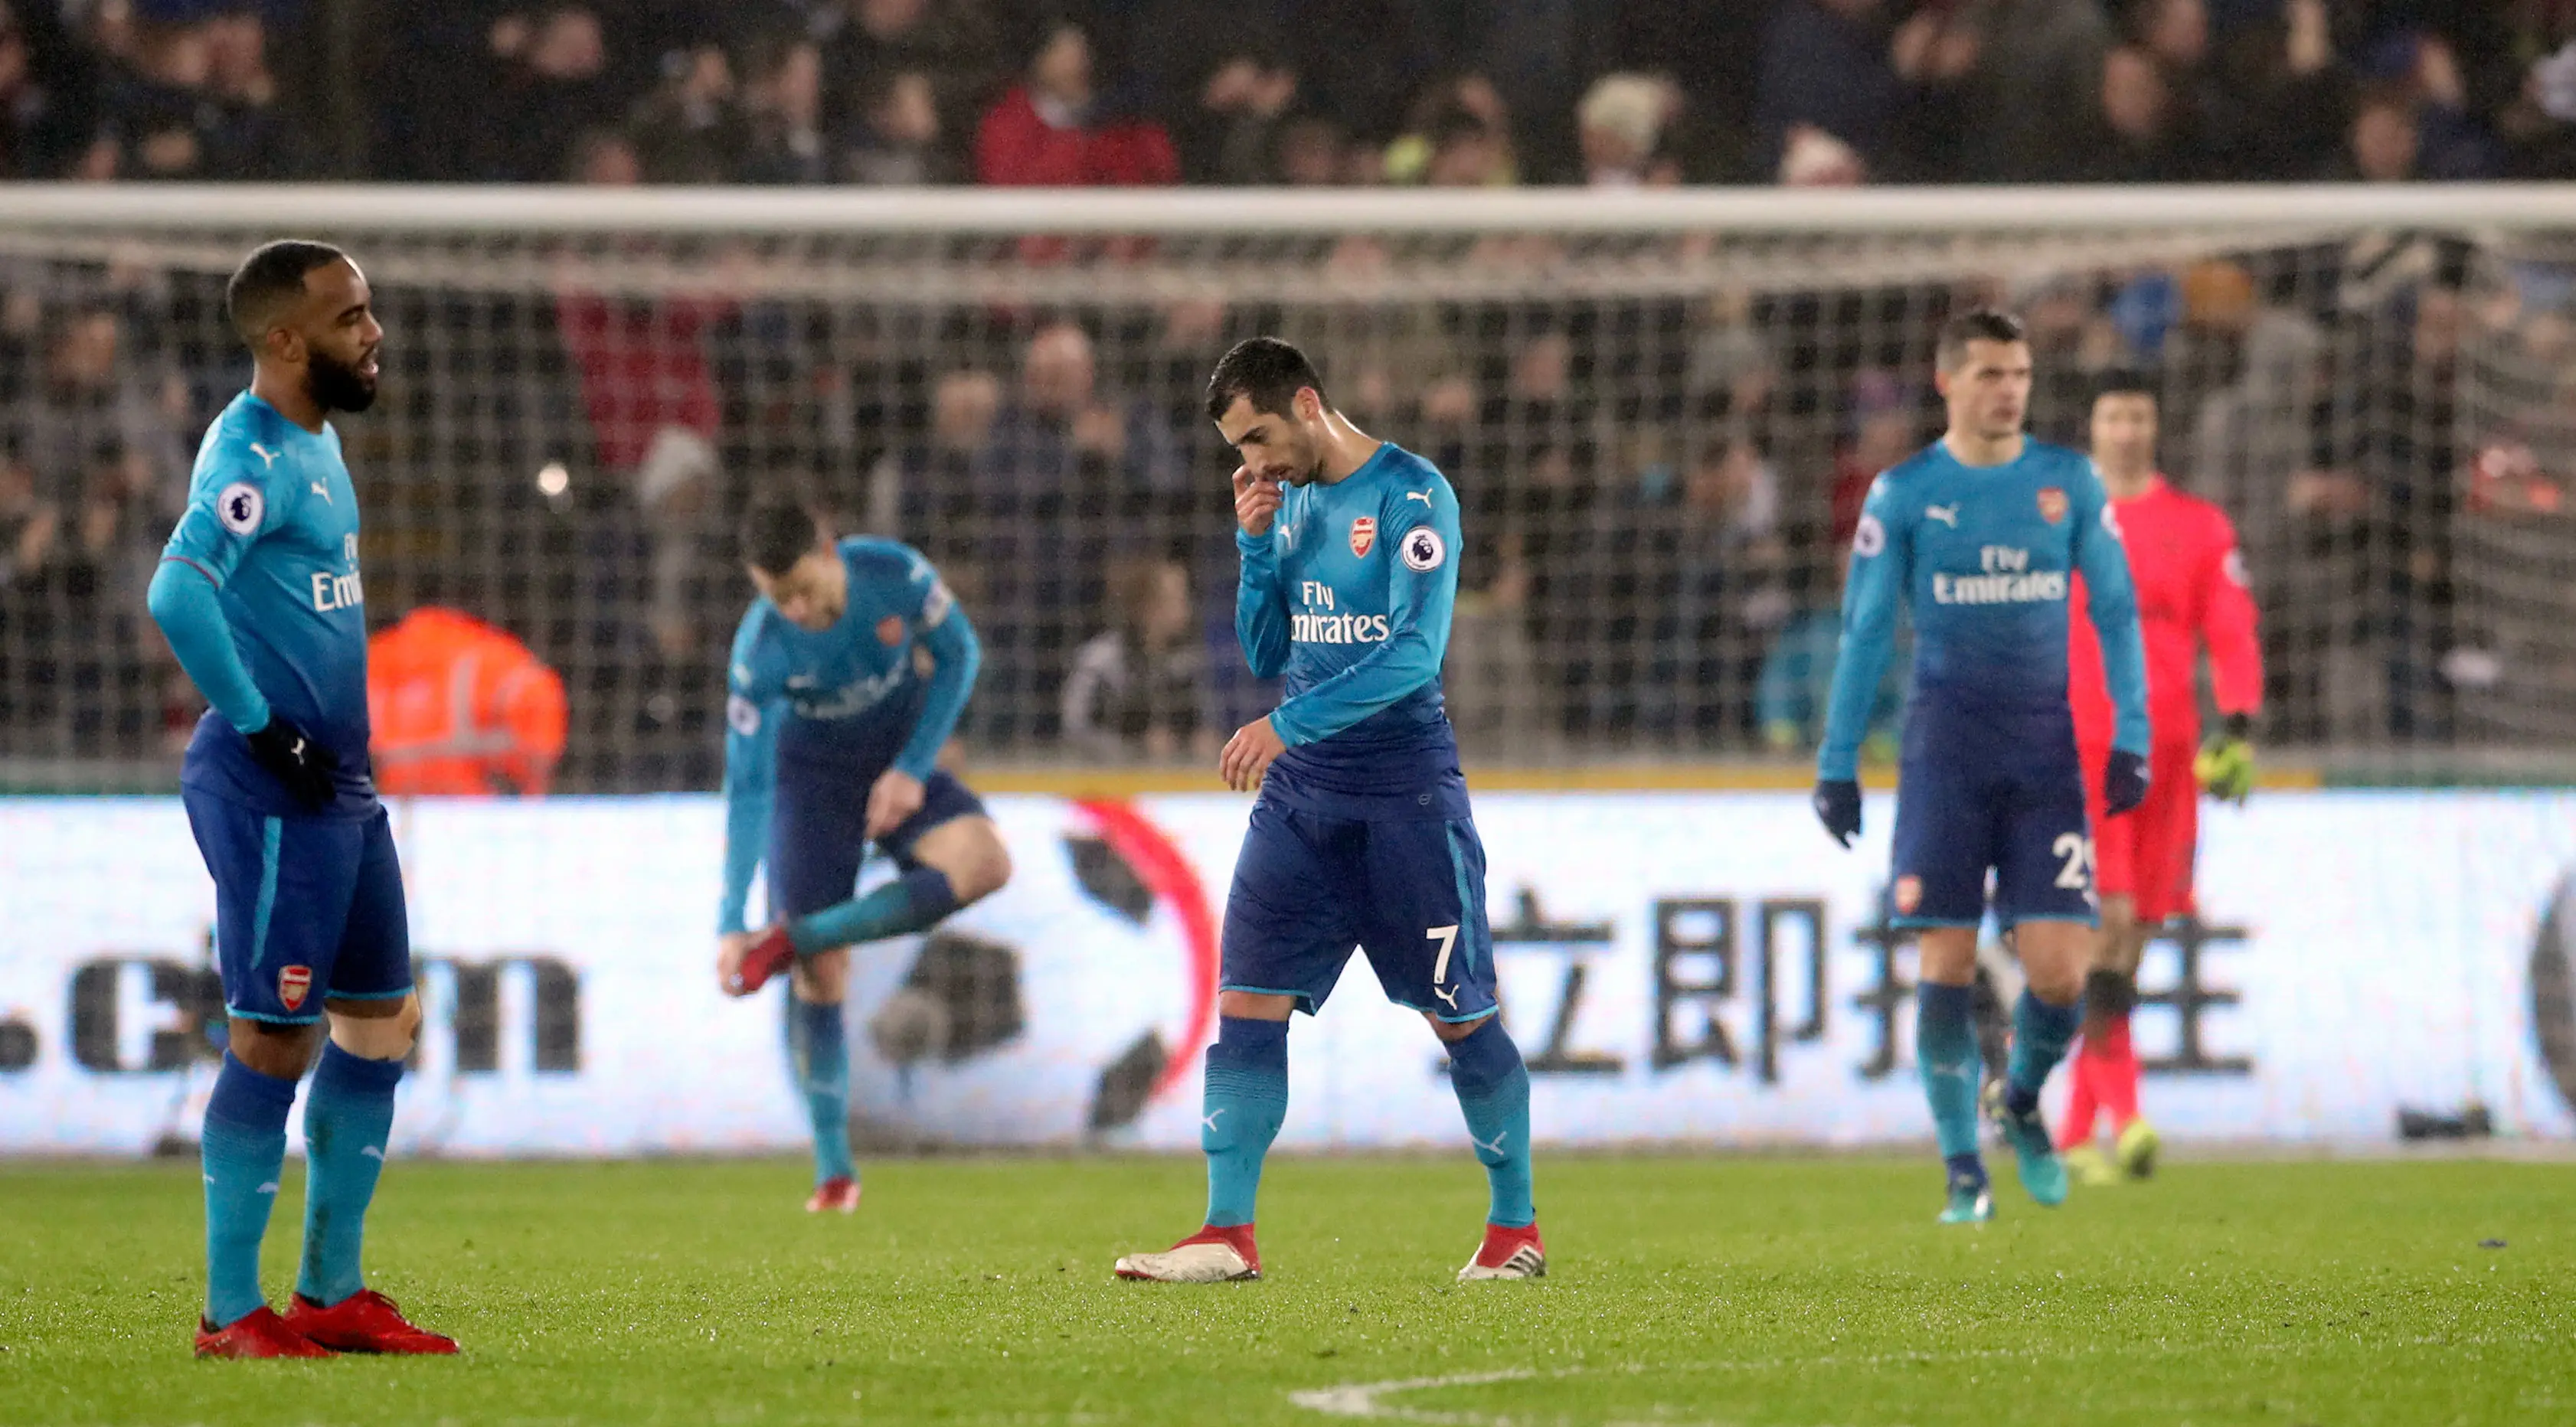 Pemain Arsenal, Henrikh Mkhitaryan (tengah) tertunduk lesu setelah Swansea City mencetak gol ketiga dalam laga pekan ke-25 Premier League 2017-2018 di Liberty Stadium, Selasa (30/1). Arsenal dipaksa menyerah Swansea City 1-3. (Nick Potts/PA via AP)